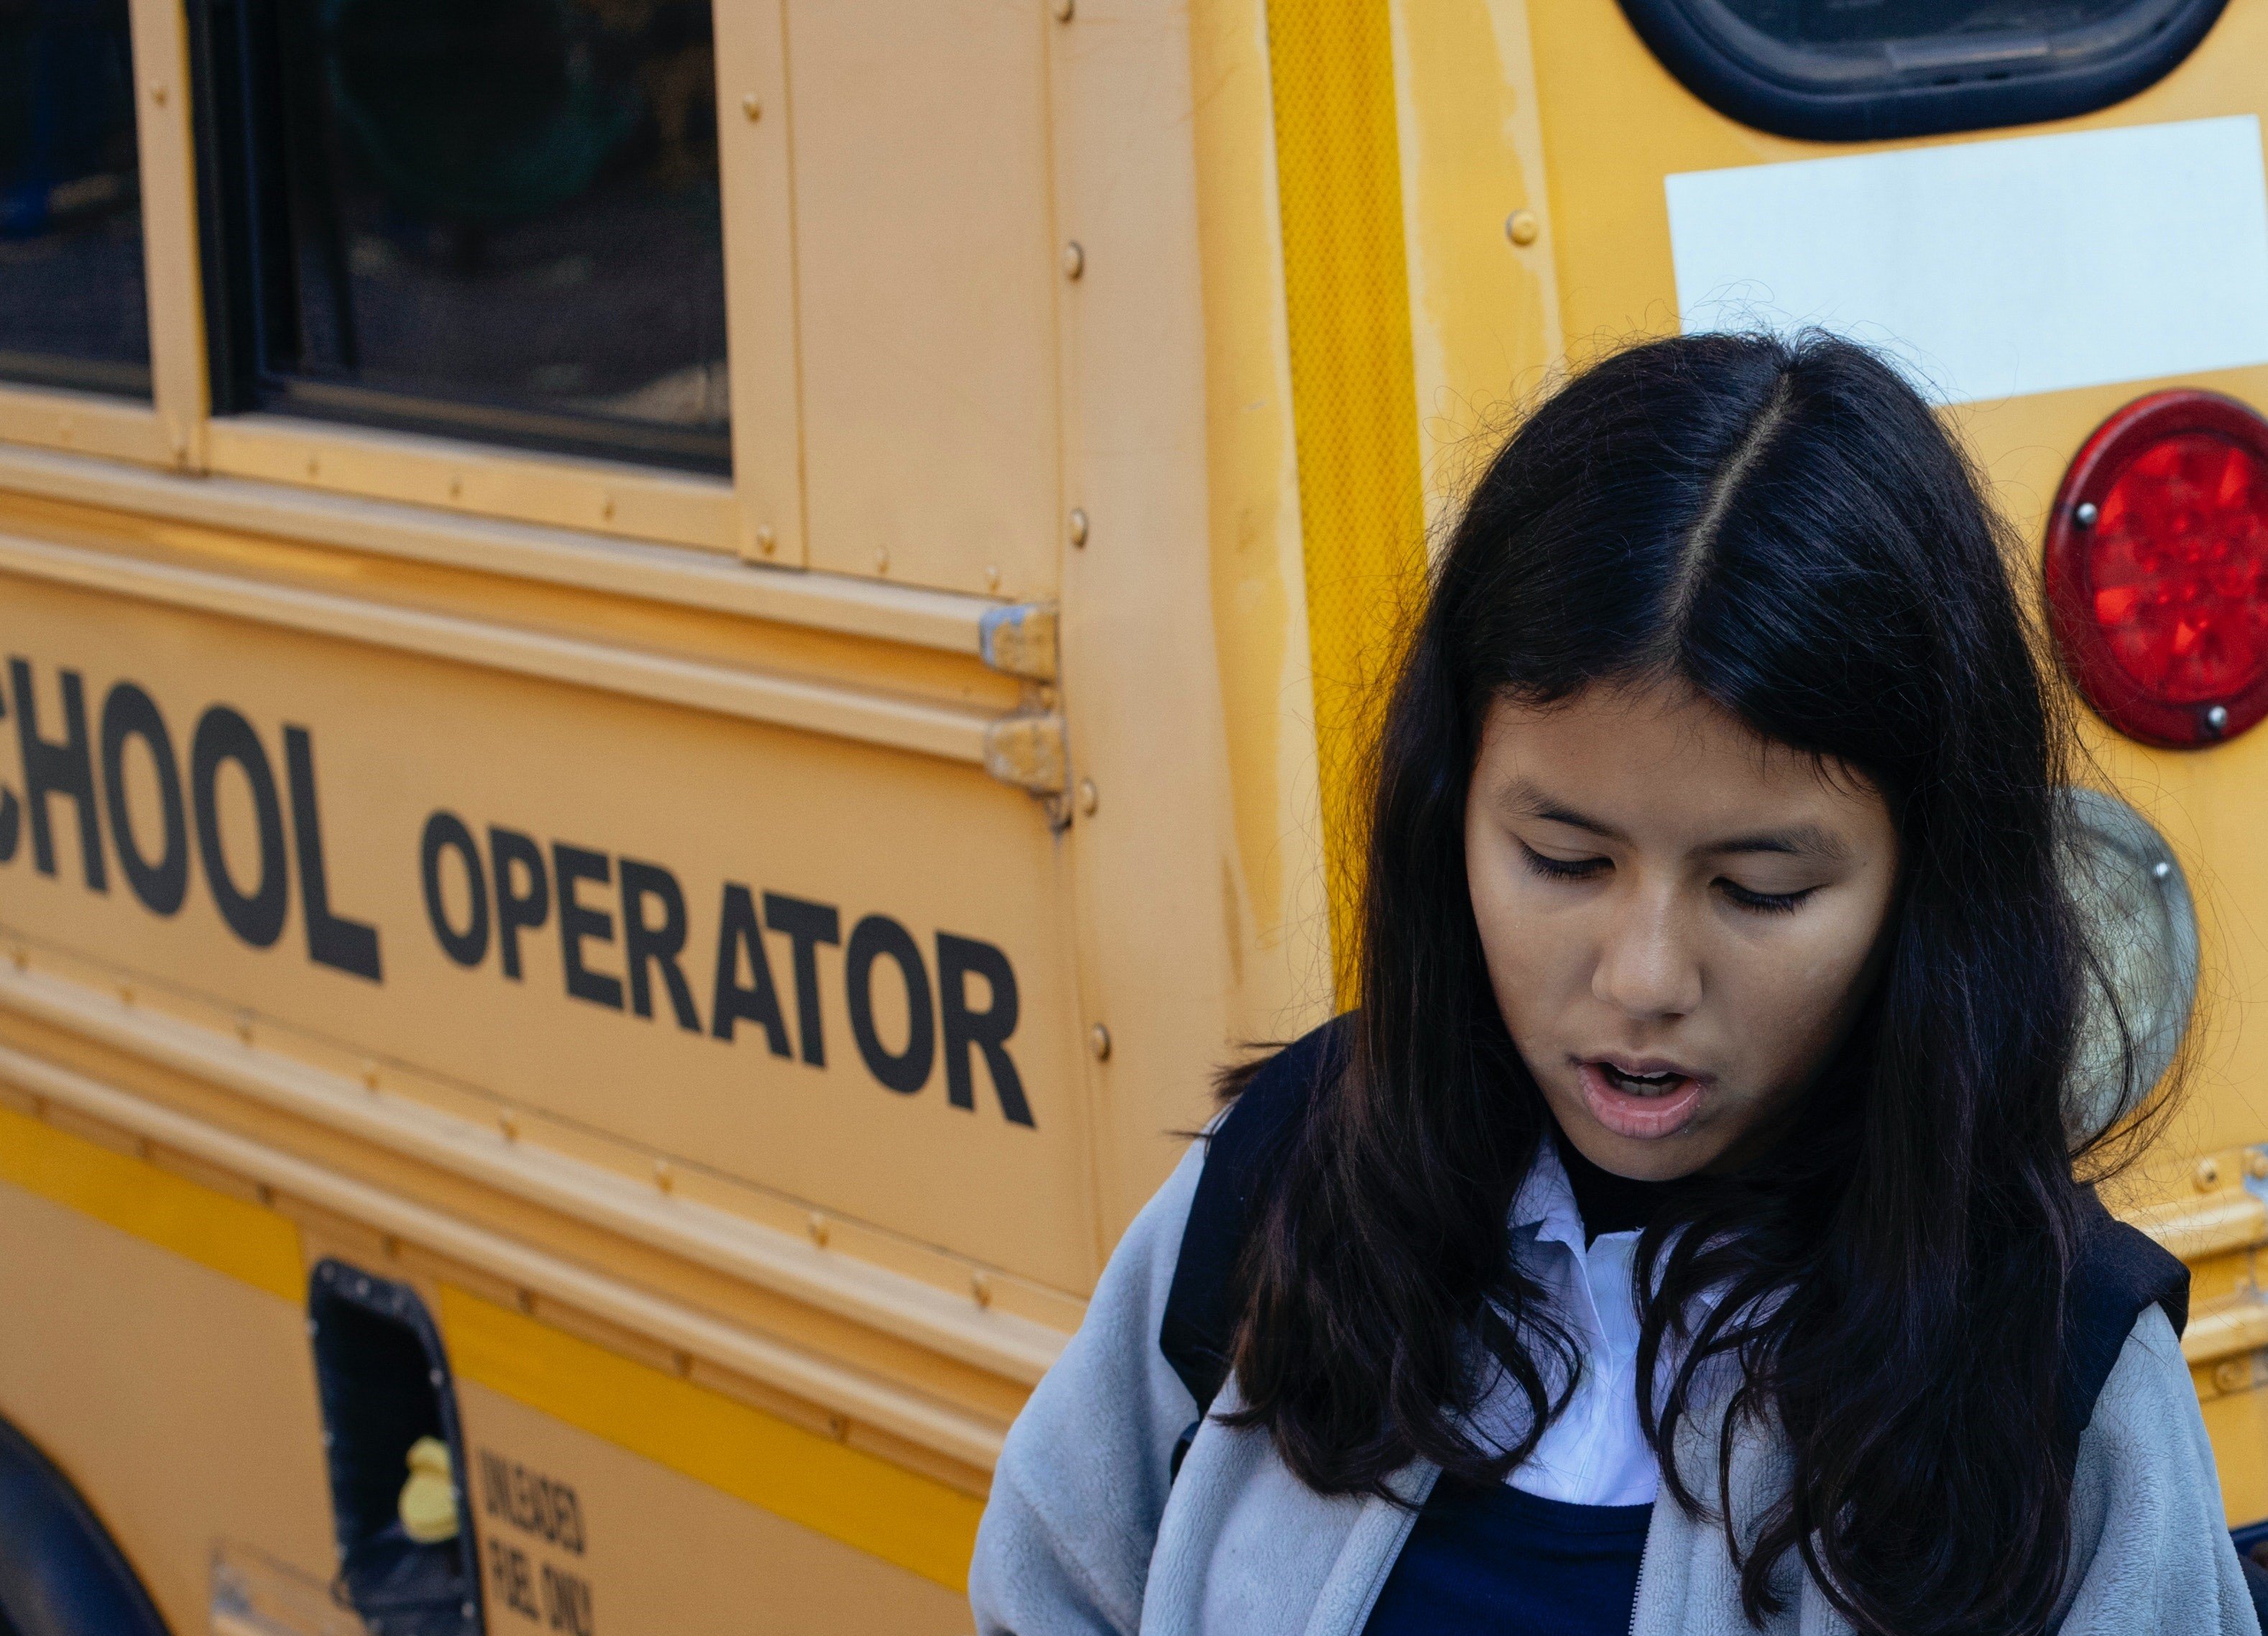 Le chauffeur du bus scolaire aurait réprimandé la jeune fille en la déposant | Photo : Pexels